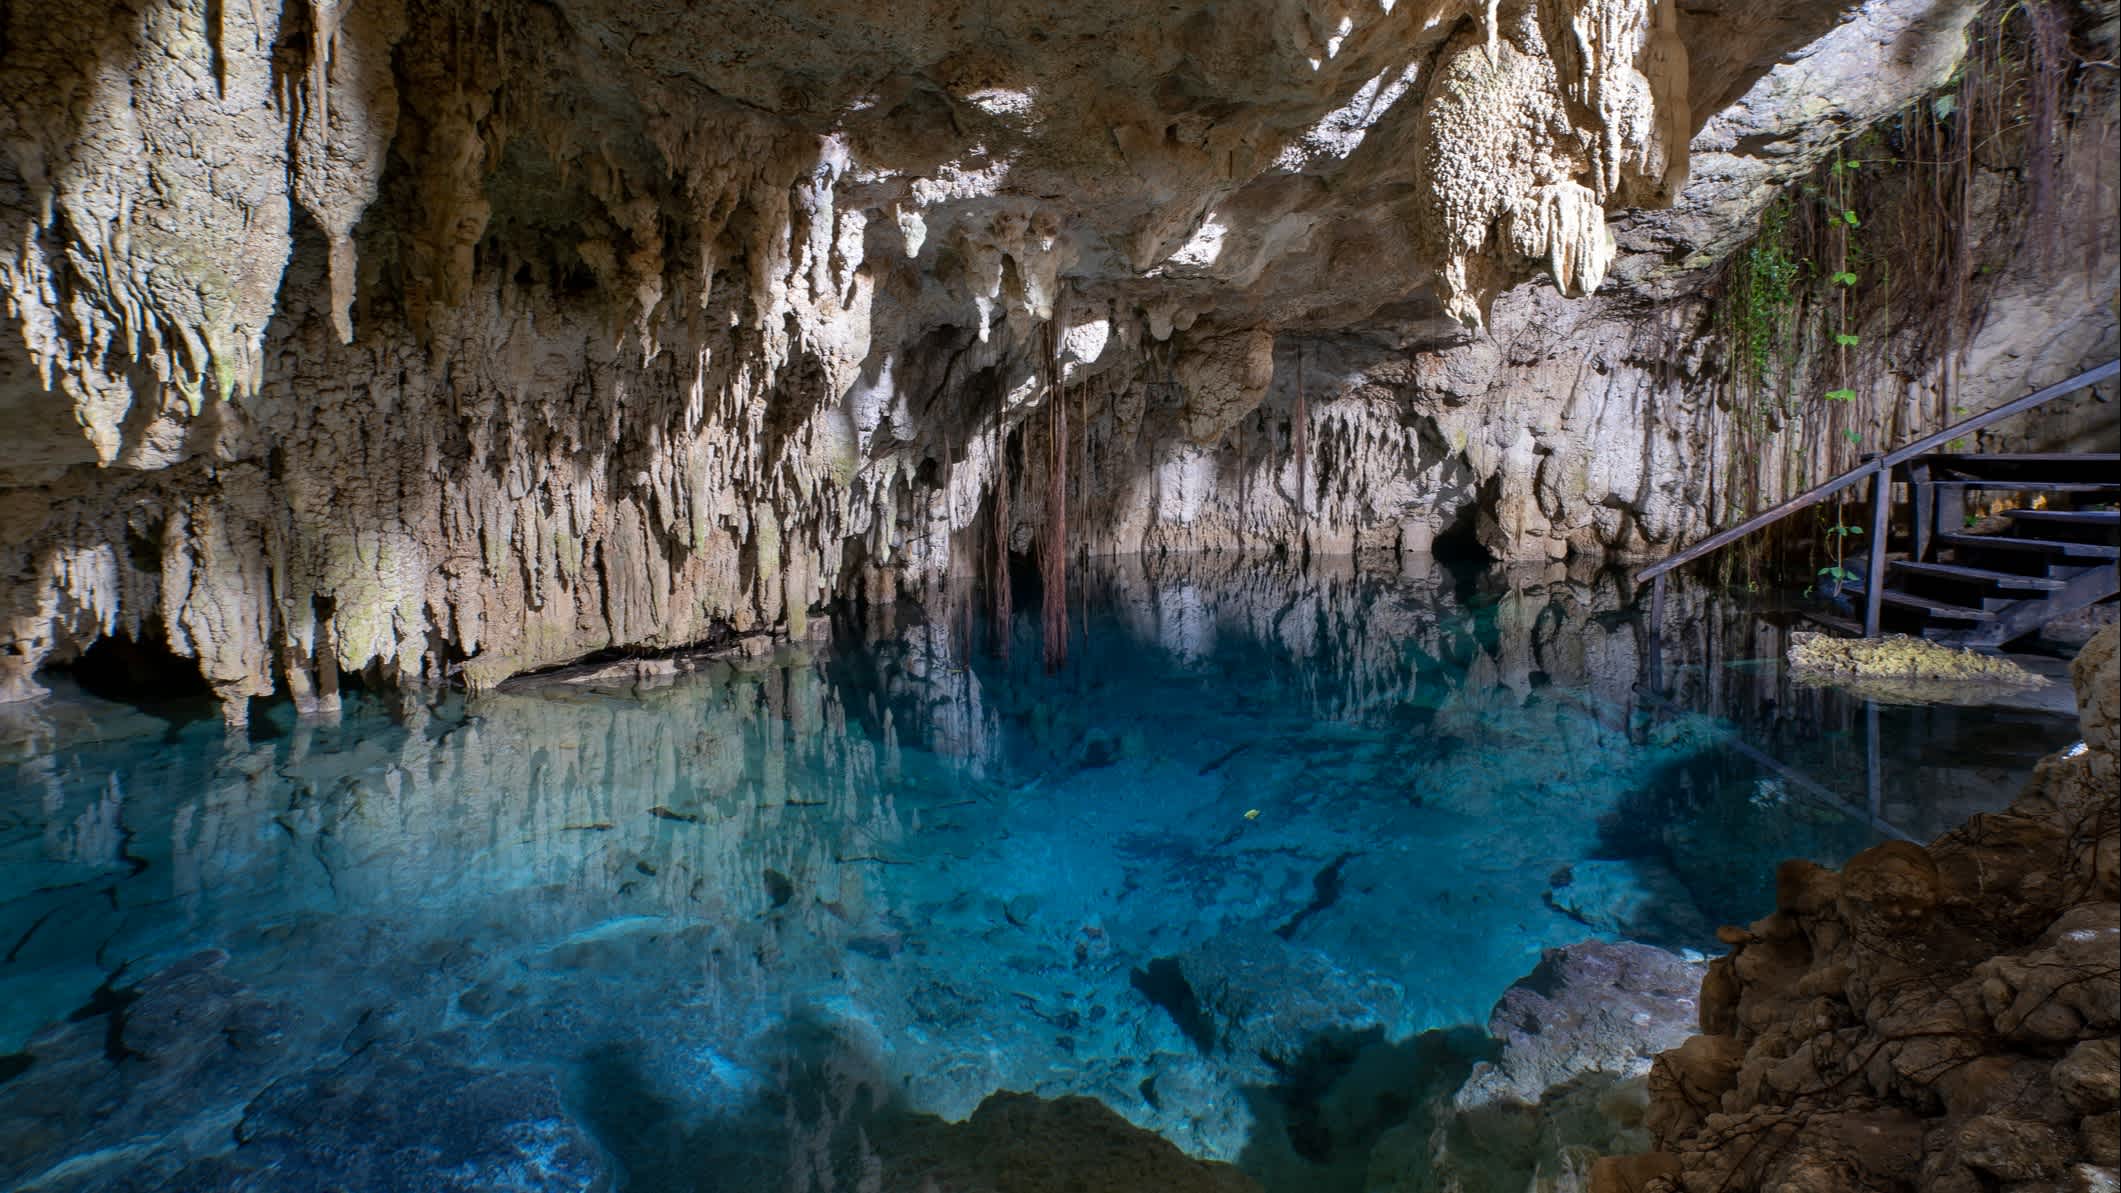 Vue sur l'intérieur d'une des grottes Río Secreto, péninsule du Yucatan, Mexique

